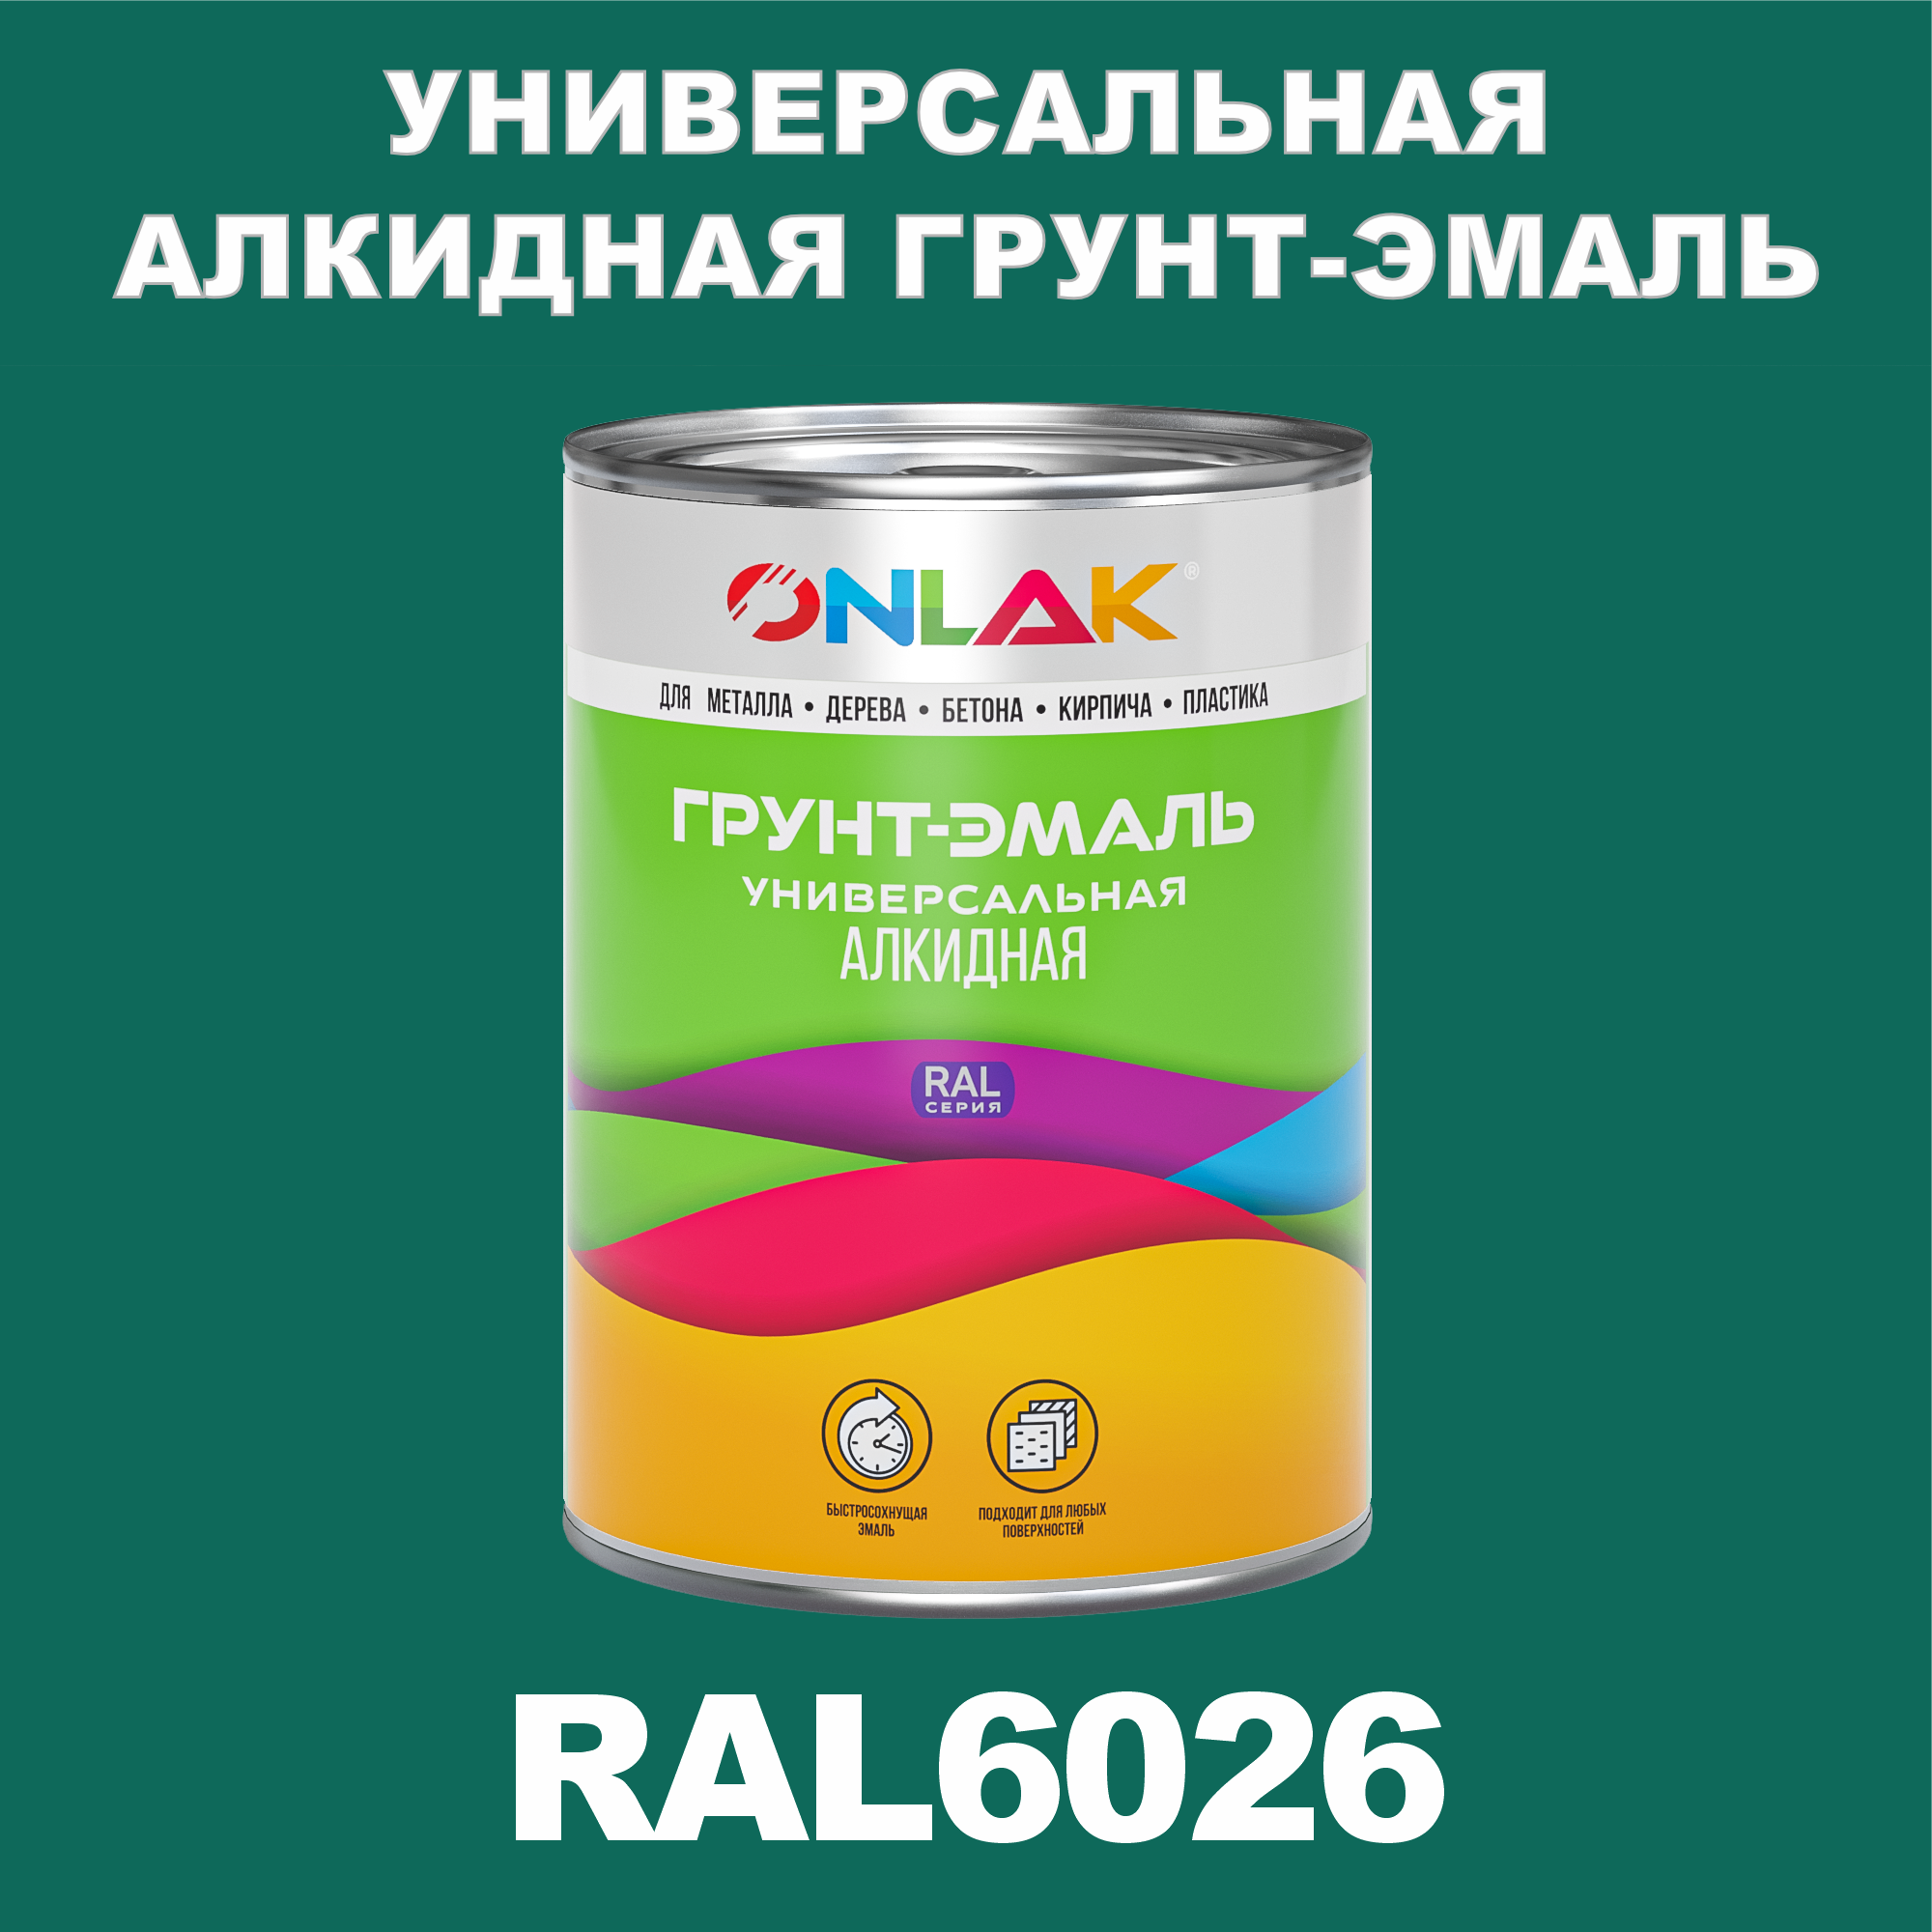 Грунт-эмаль ONLAK 1К RAL6026 антикоррозионная алкидная по металлу по ржавчине 1 кг грунт эмаль аэрозольная престиж 3в1 алкидная коричневая ral 8017 425 мл 0 425 кг